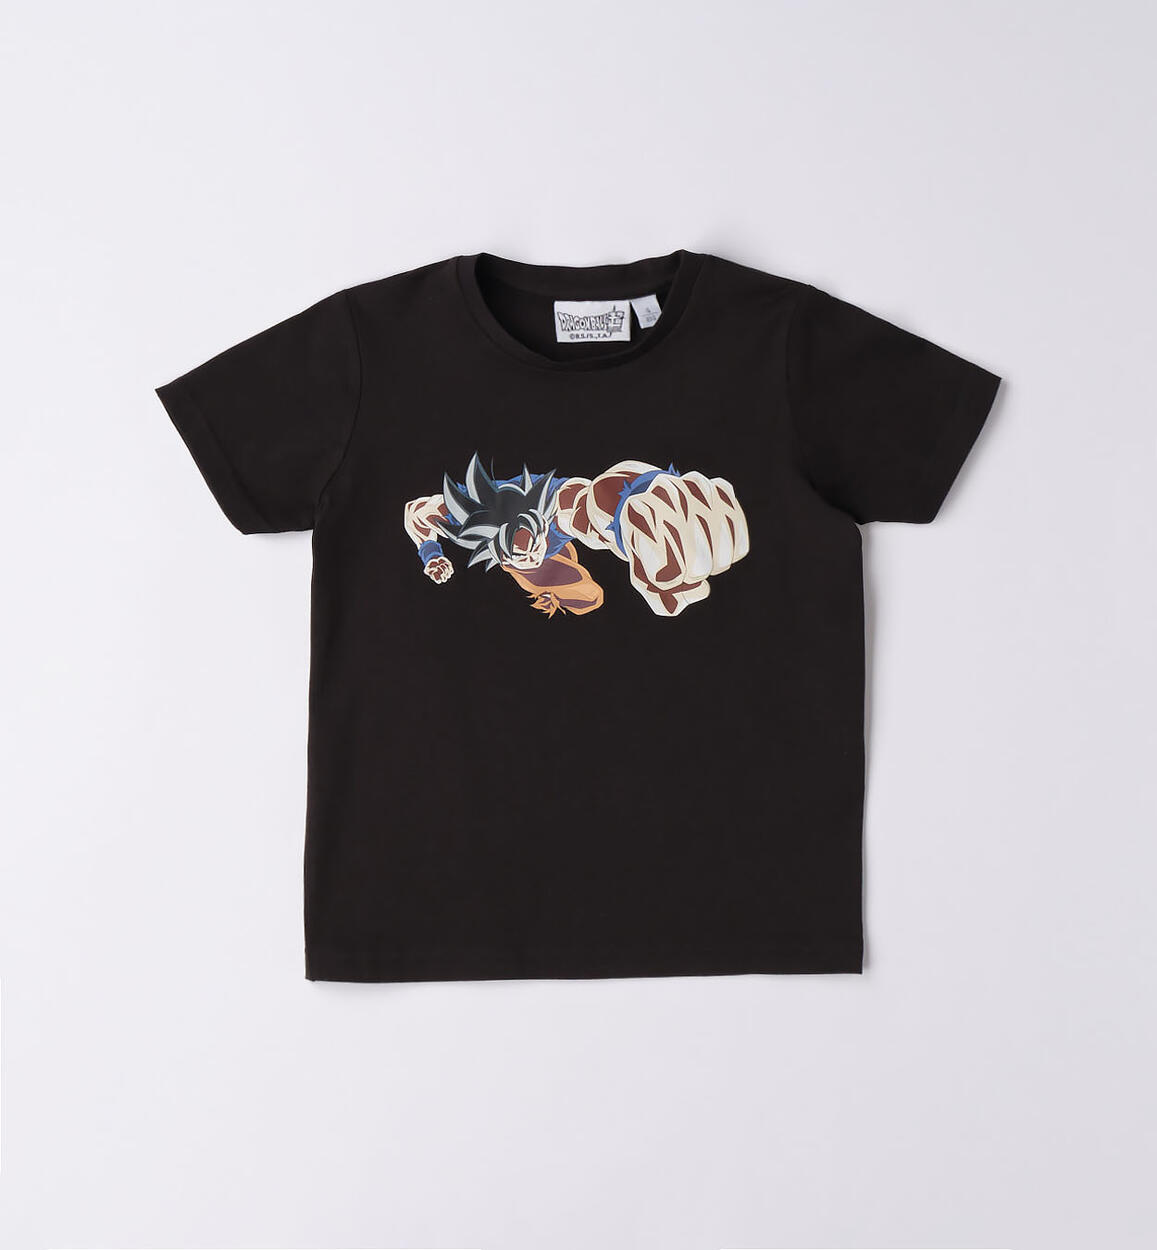 T-shirt bambino "Dragon Ball" NERO iDO